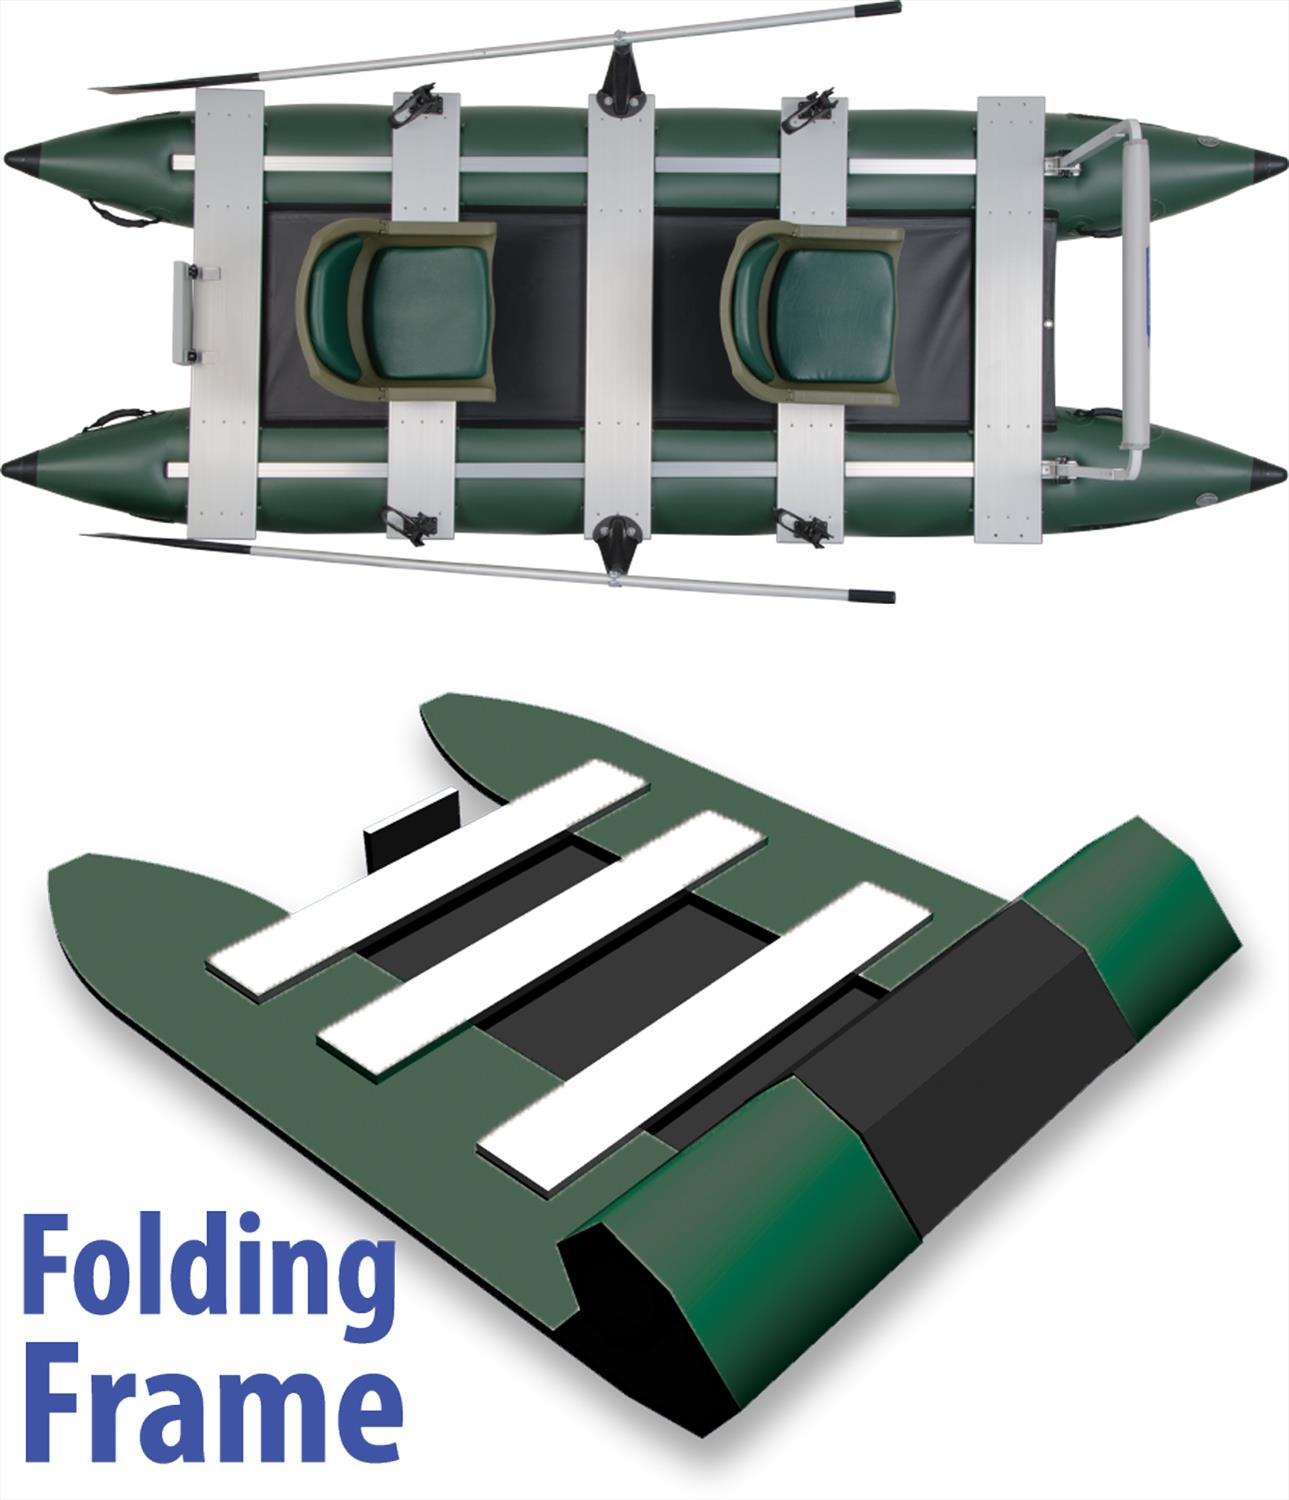 Sea Eagle 375fc FoldCat™ Inflatable 2-person Fishing Boat - SeaEagle.com 